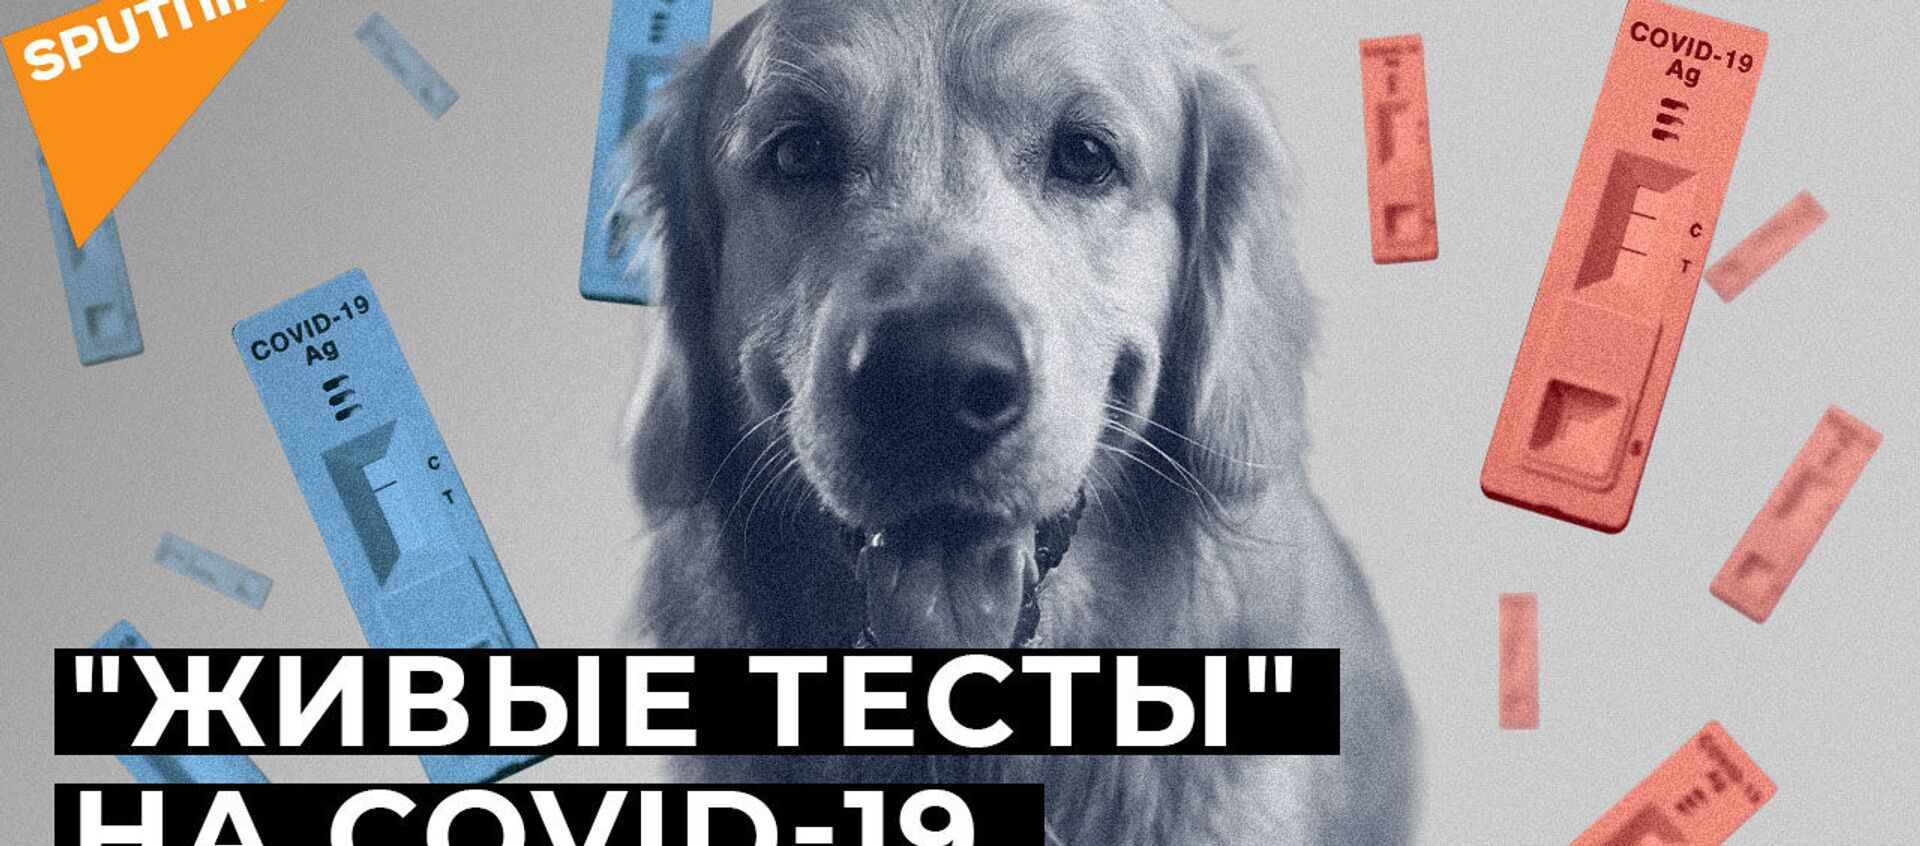 Нюх на COVID-19: могут ли собаки распознать зараженных коронавирусом? - Sputnik Грузия, 1920, 22.01.2021